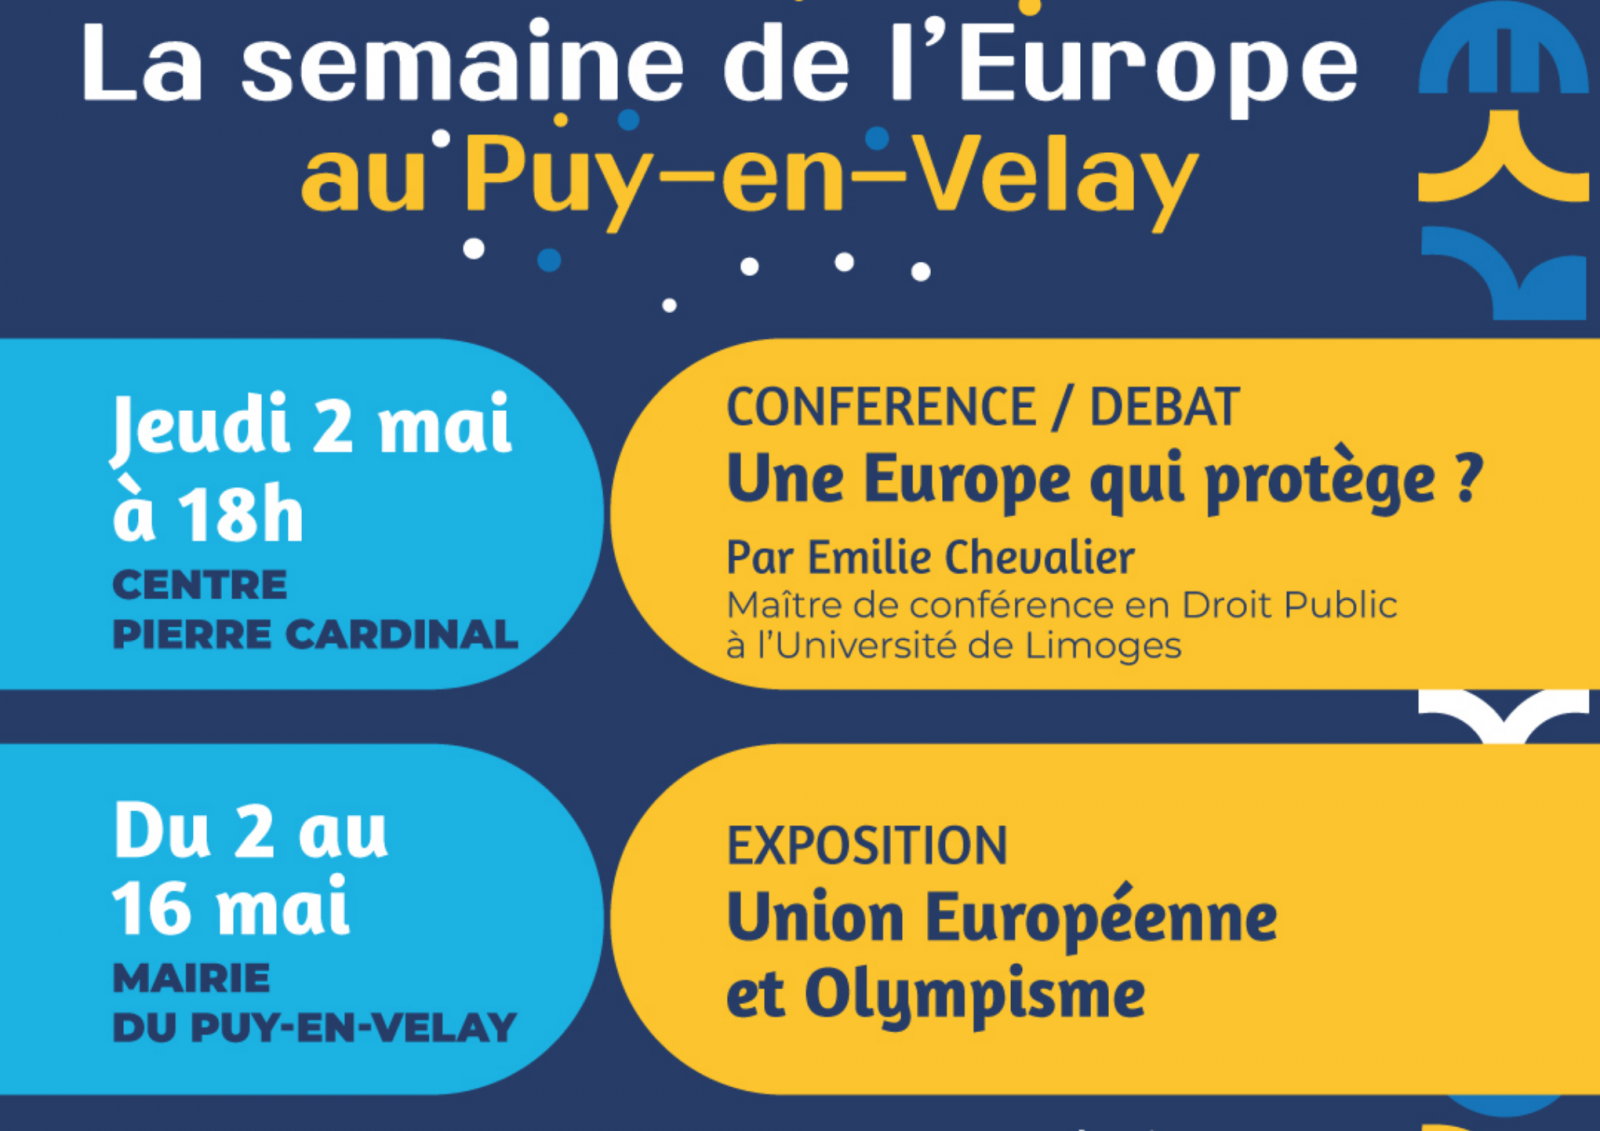 La semaine de l’Europe au Puy-en-Velay